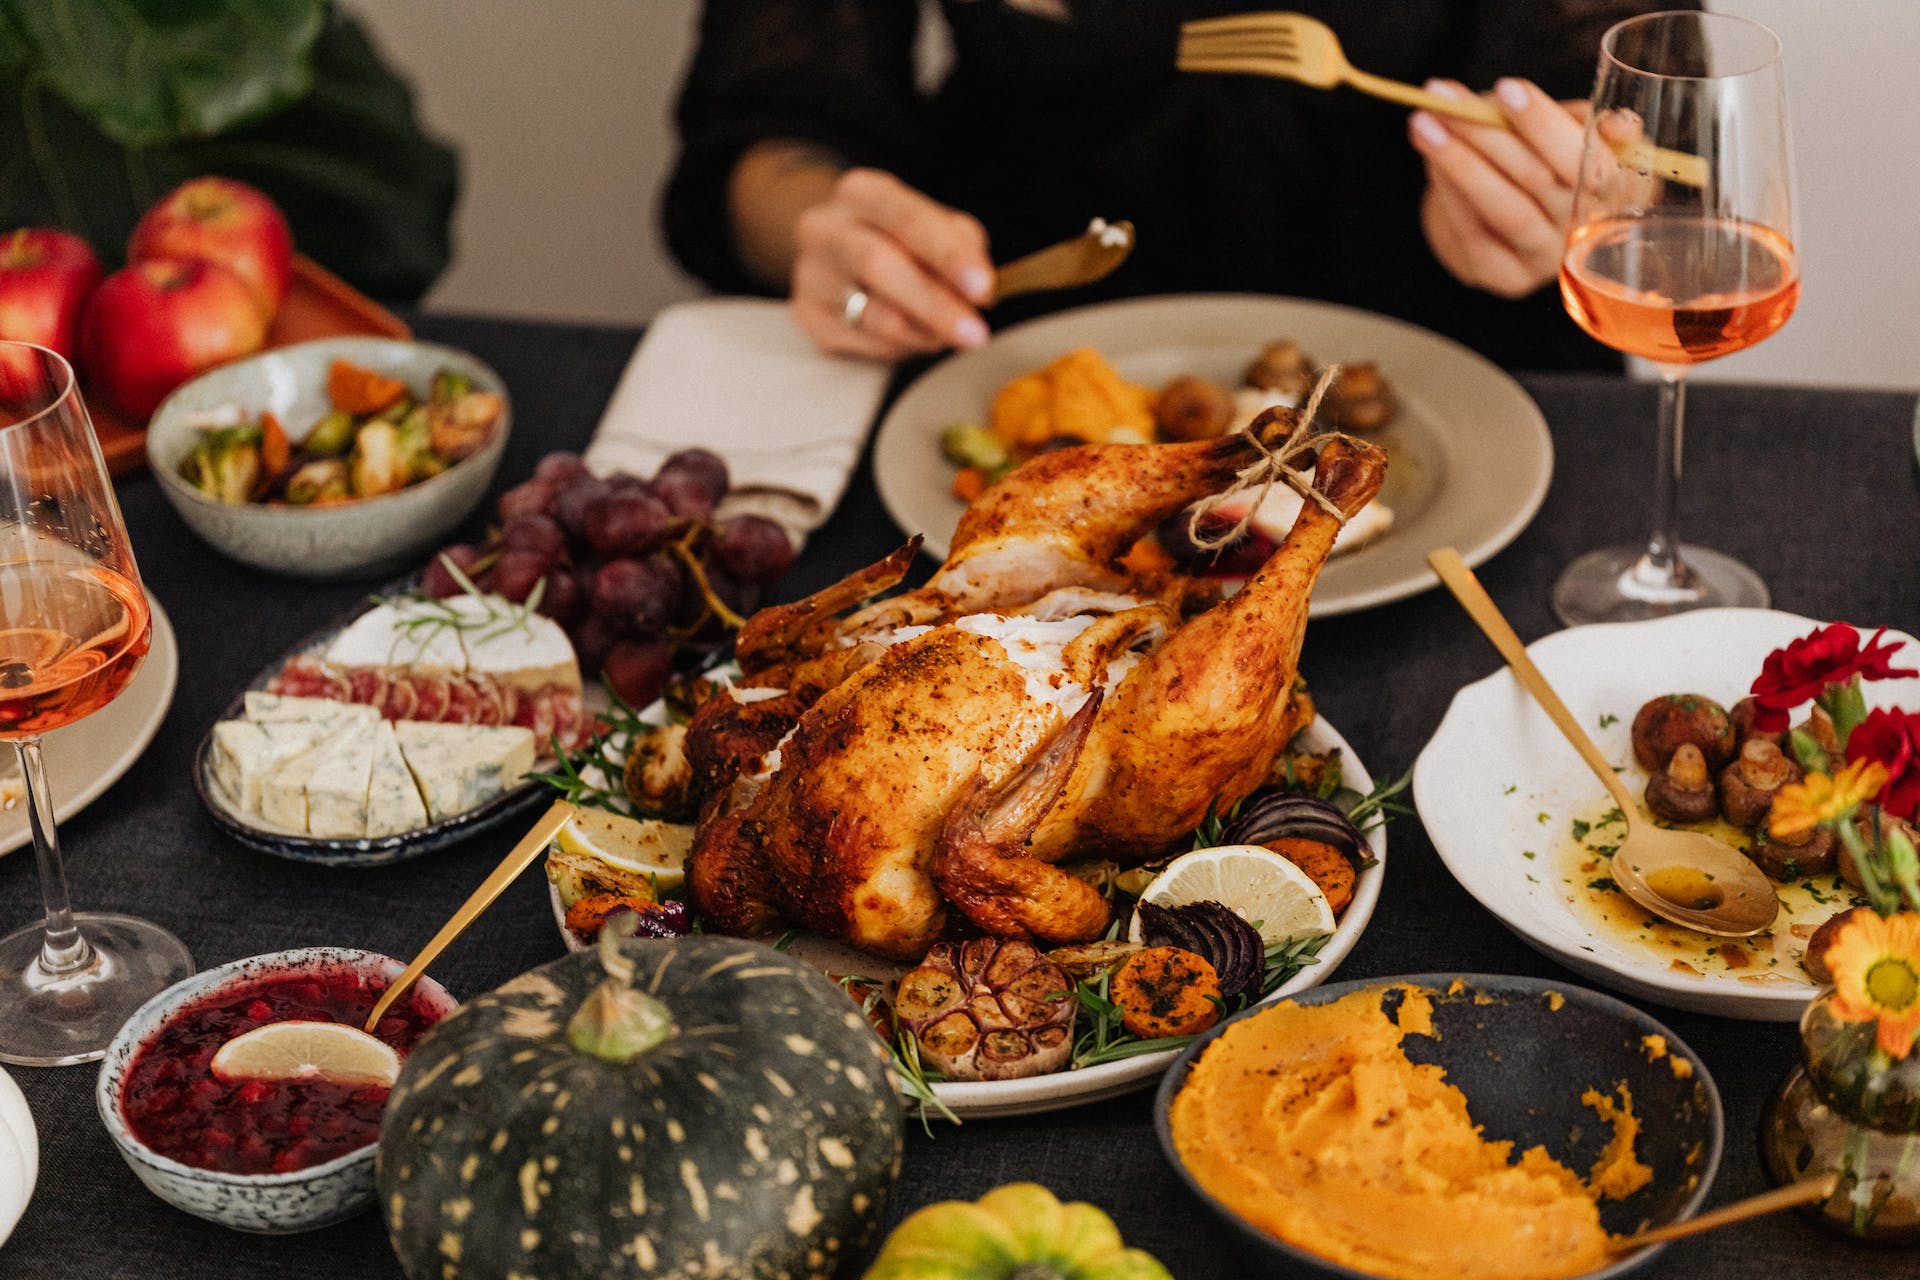 Dîner de Thanksgiving servi sur la table | Source : Pexels